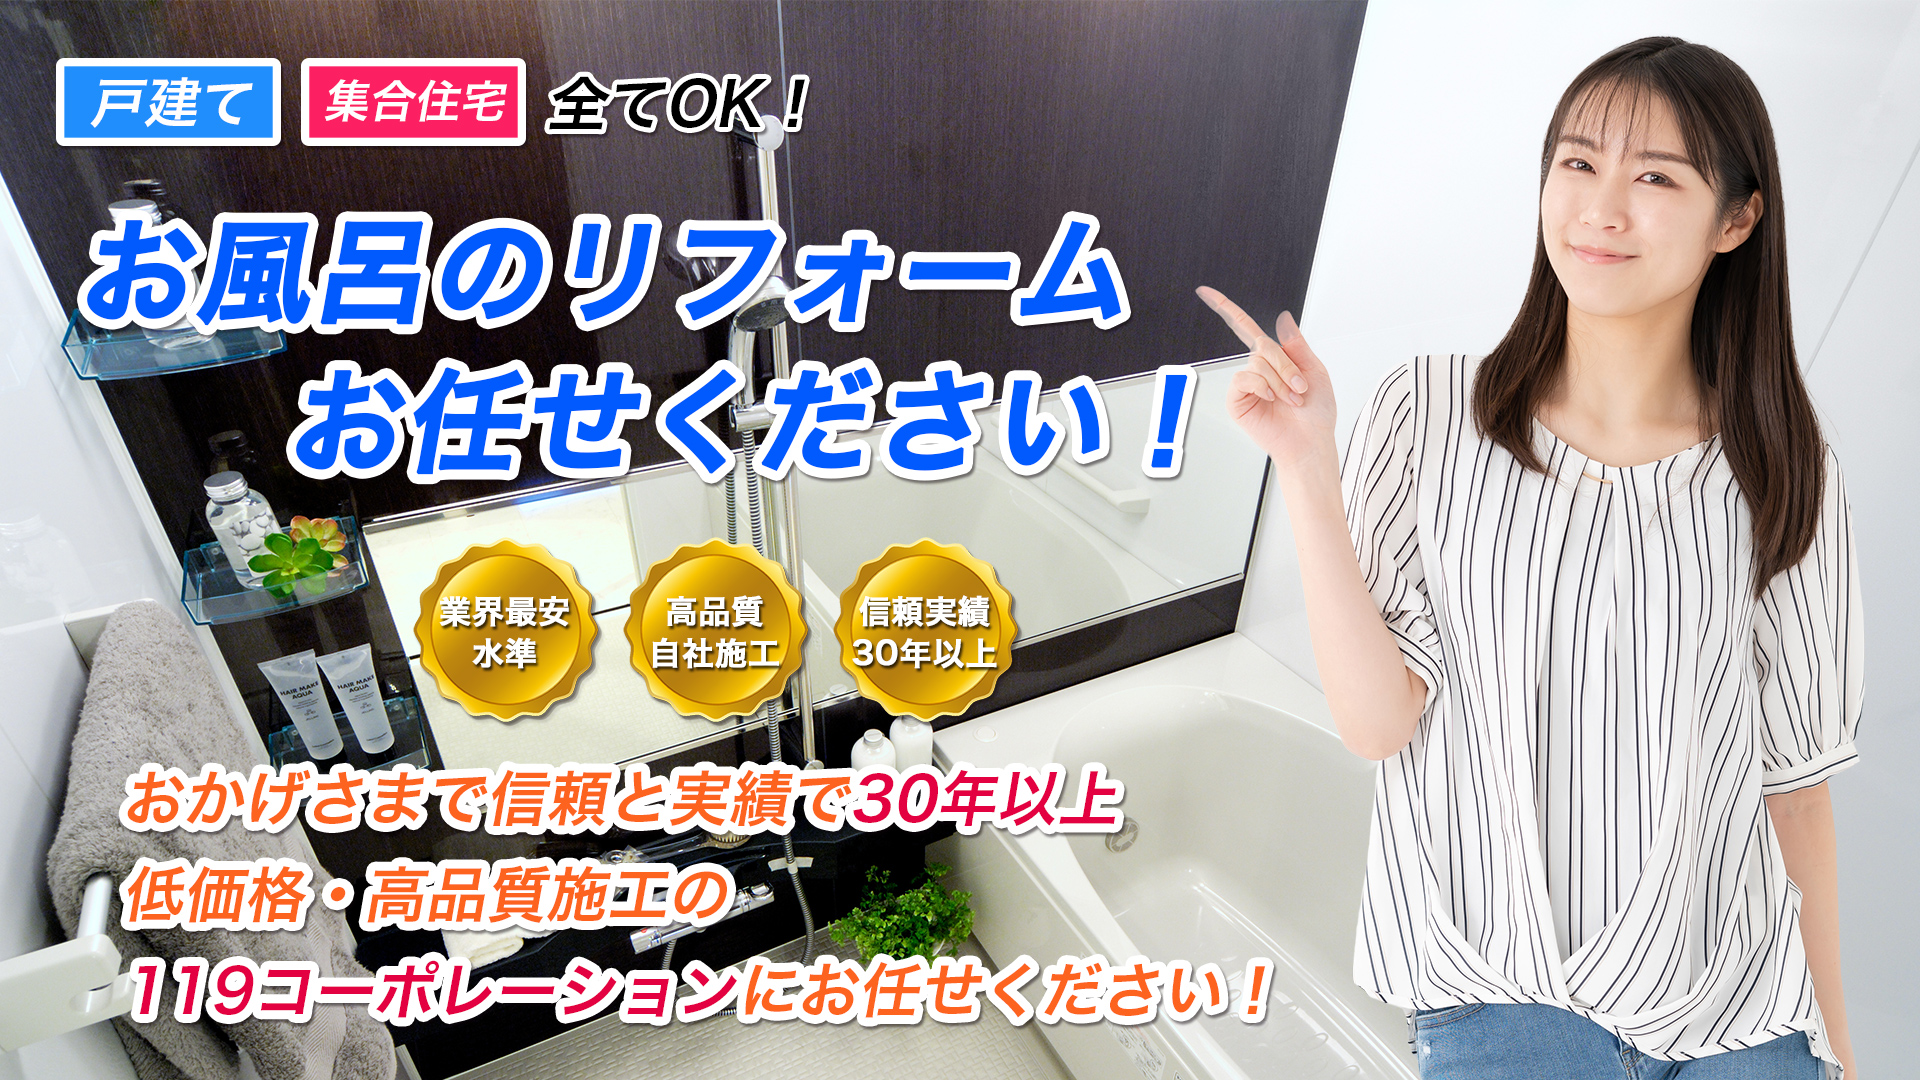 格安浴室リフォーム,東京,埼玉 東京・埼玉の格安お風呂リフォームなら「119コーポレーション」 イメージ画像1